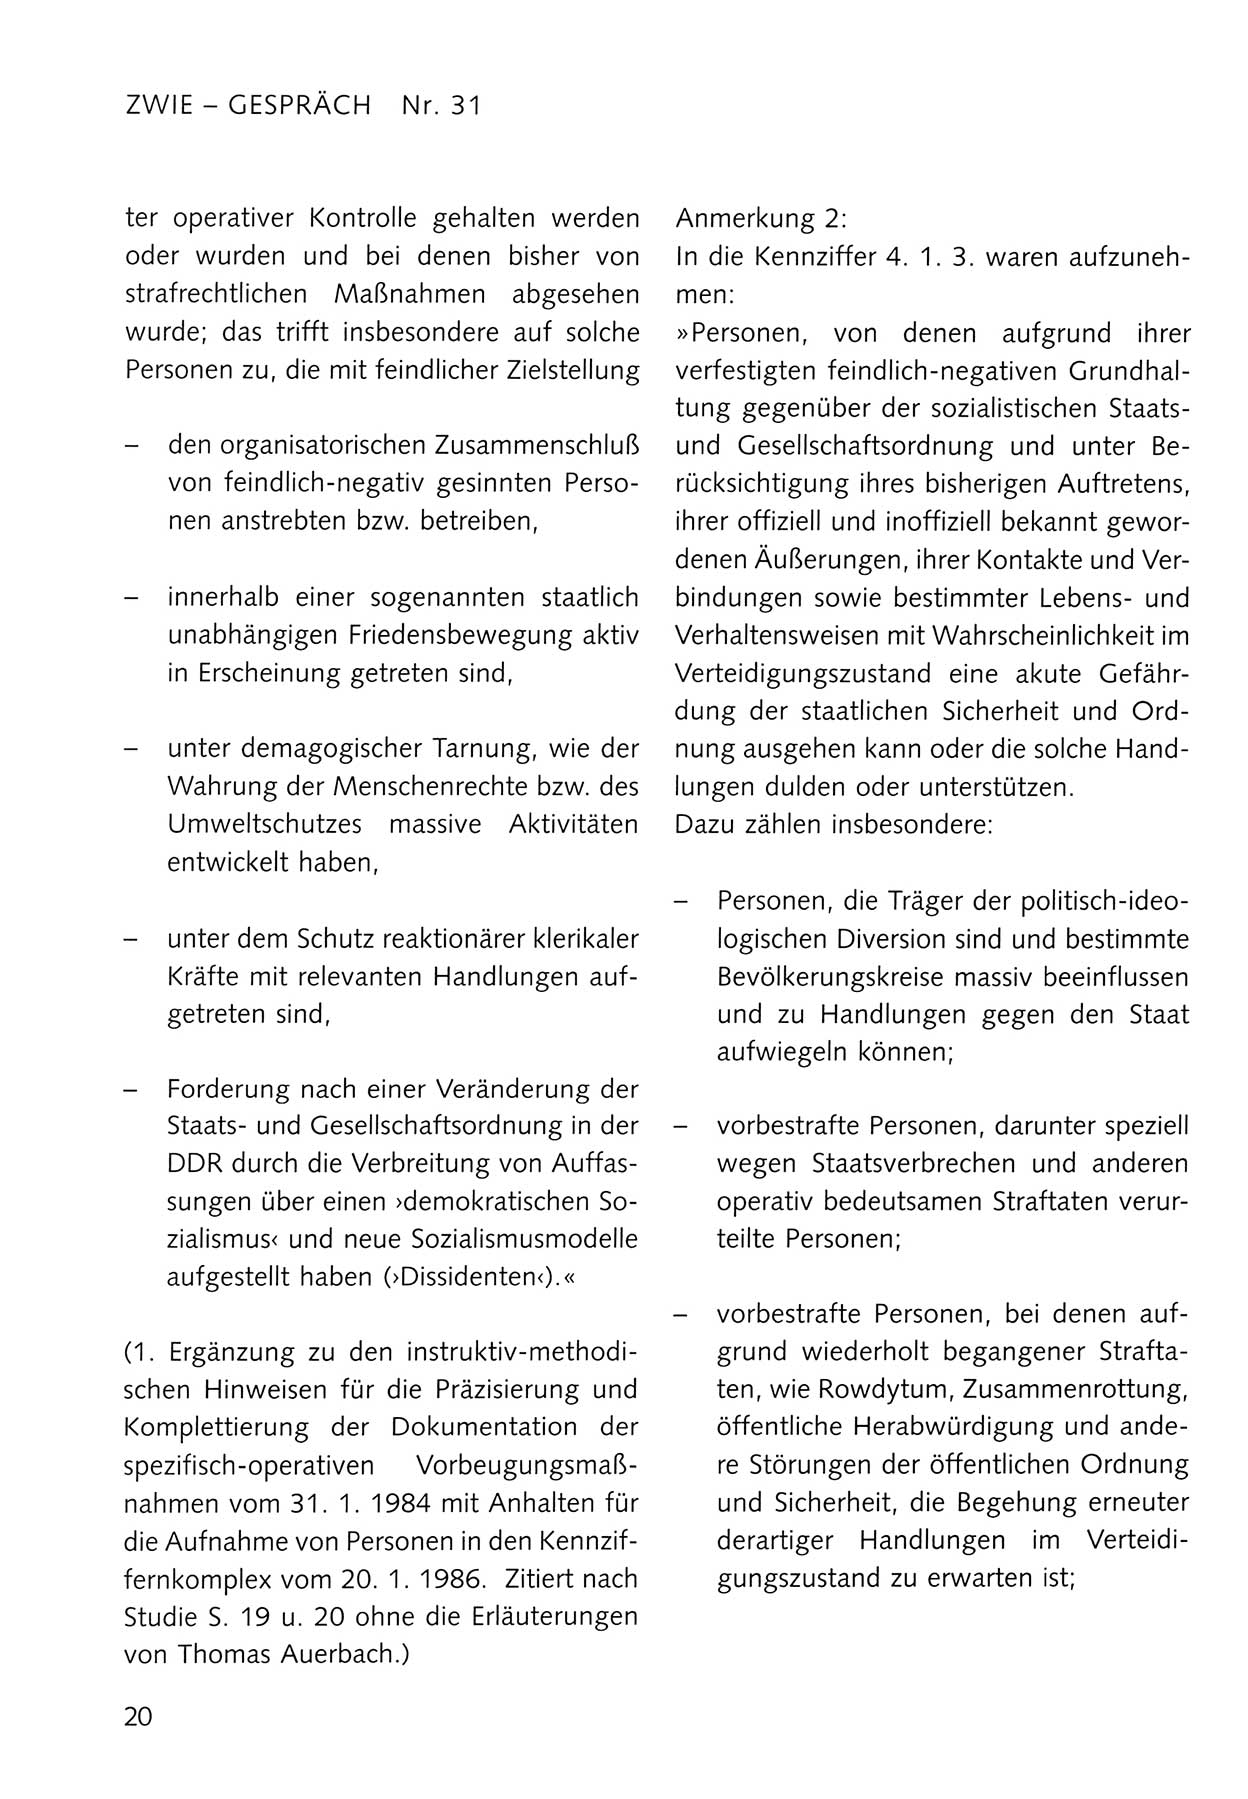 Zwie-Gespräch, Beiträge zum Umgang mit der Staatssicherheits-Vergangenheit [Deutsche Demokratische Republik (DDR)], Ausgabe Nr. 31, Berlin 1995, Seite 20 (Zwie-Gespr. Ausg. 31 1995, S. 20)